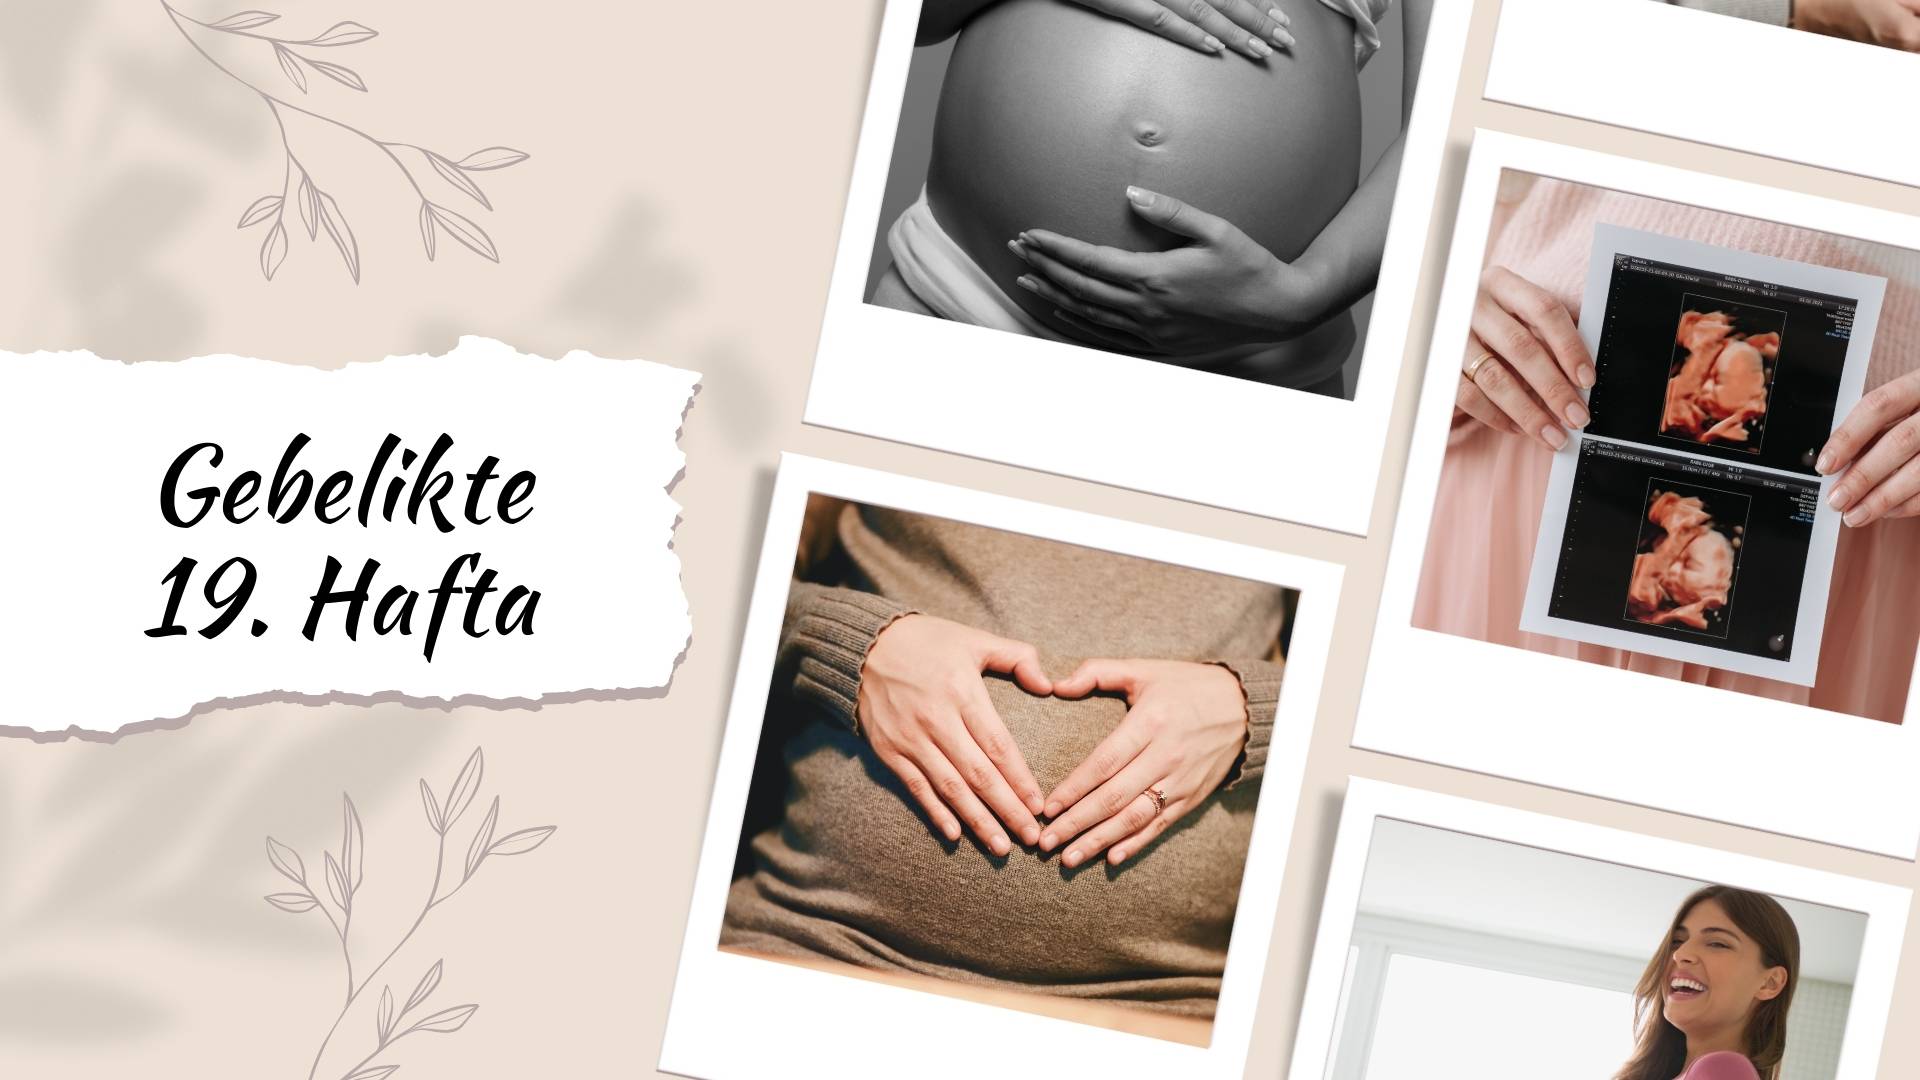 Gebelikte 19. hafta, bebeğin gelişimi, rahim büyüklüğü, beslenme önerileri, ve ruhsal değişimler hakkında bilgi alın. 19. hafta gebelik belirtileri nelerdir, merak ediyorsanız cevapları burada!